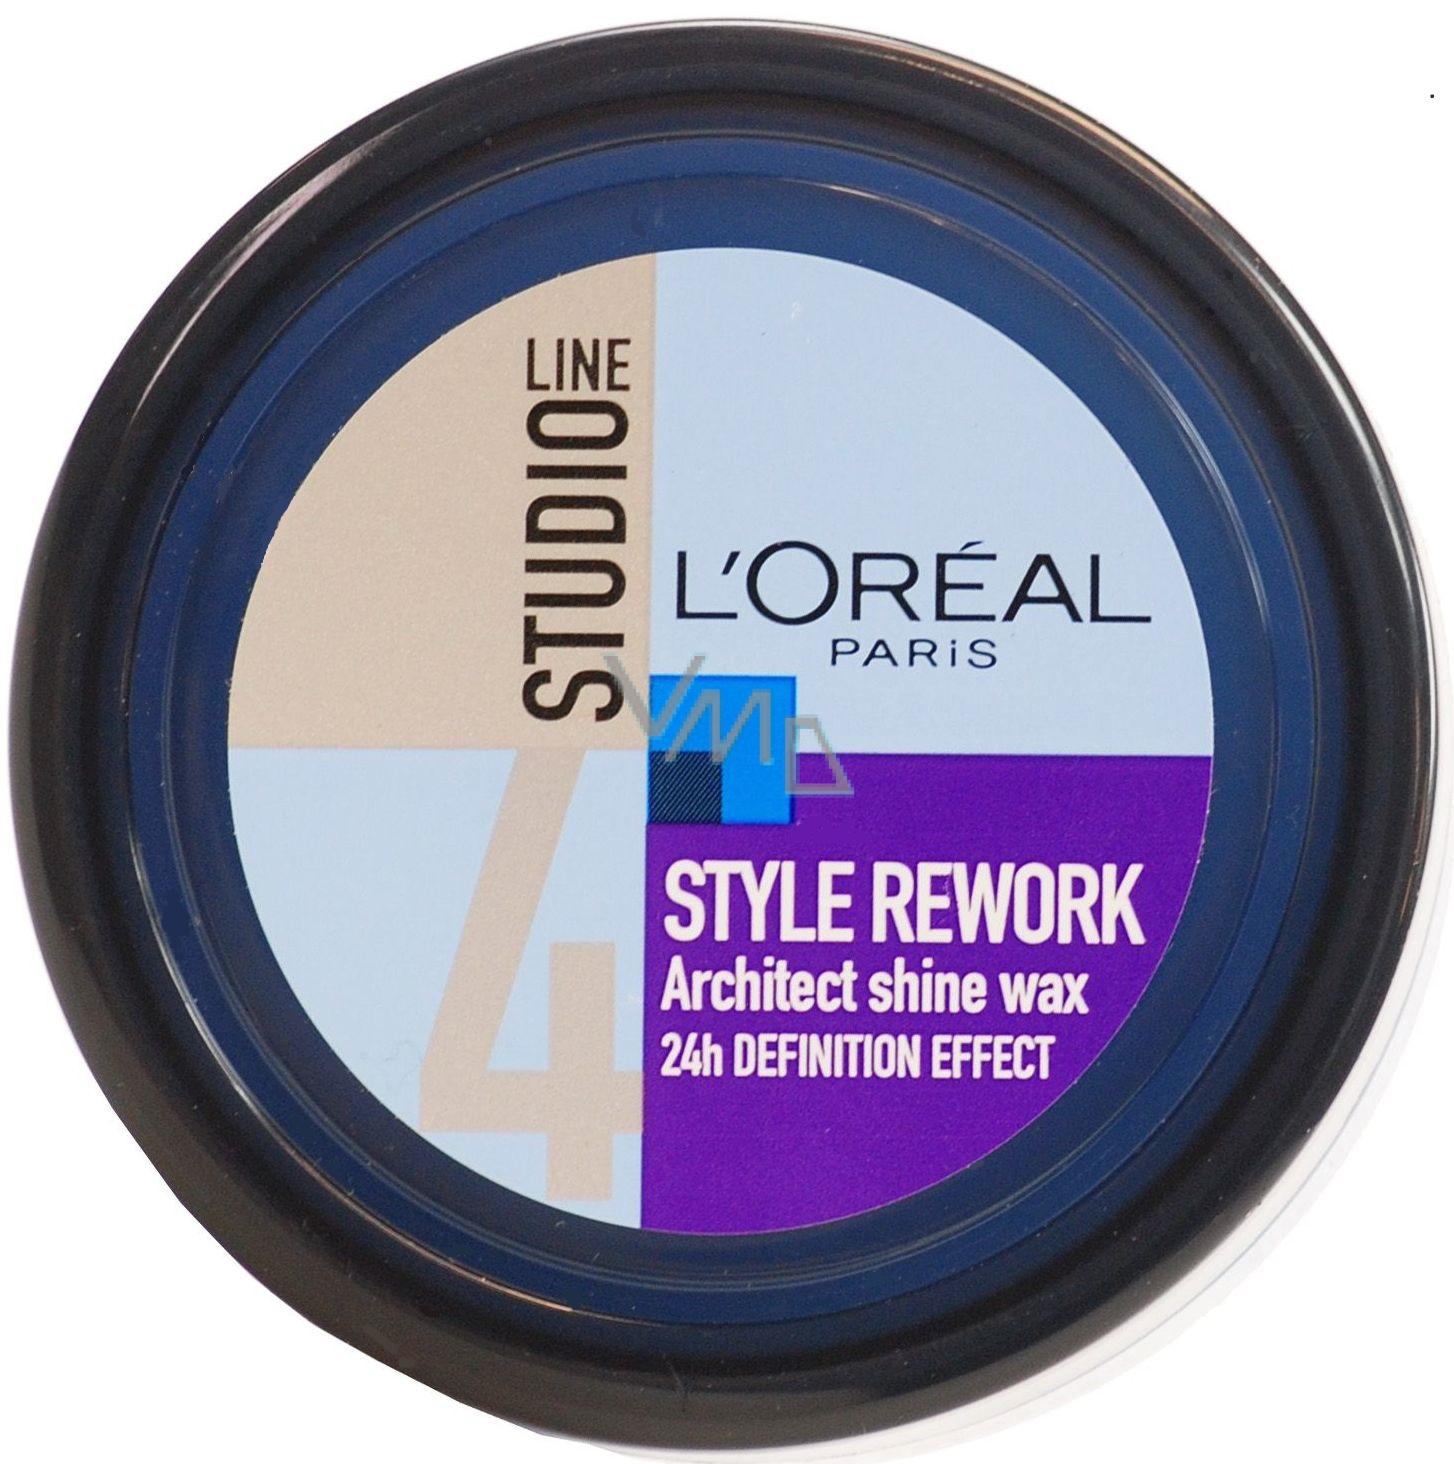 Loreal Paris Studio Line Architect Shine Wax hair wax 75 ml - VMD  parfumerie - drogerie